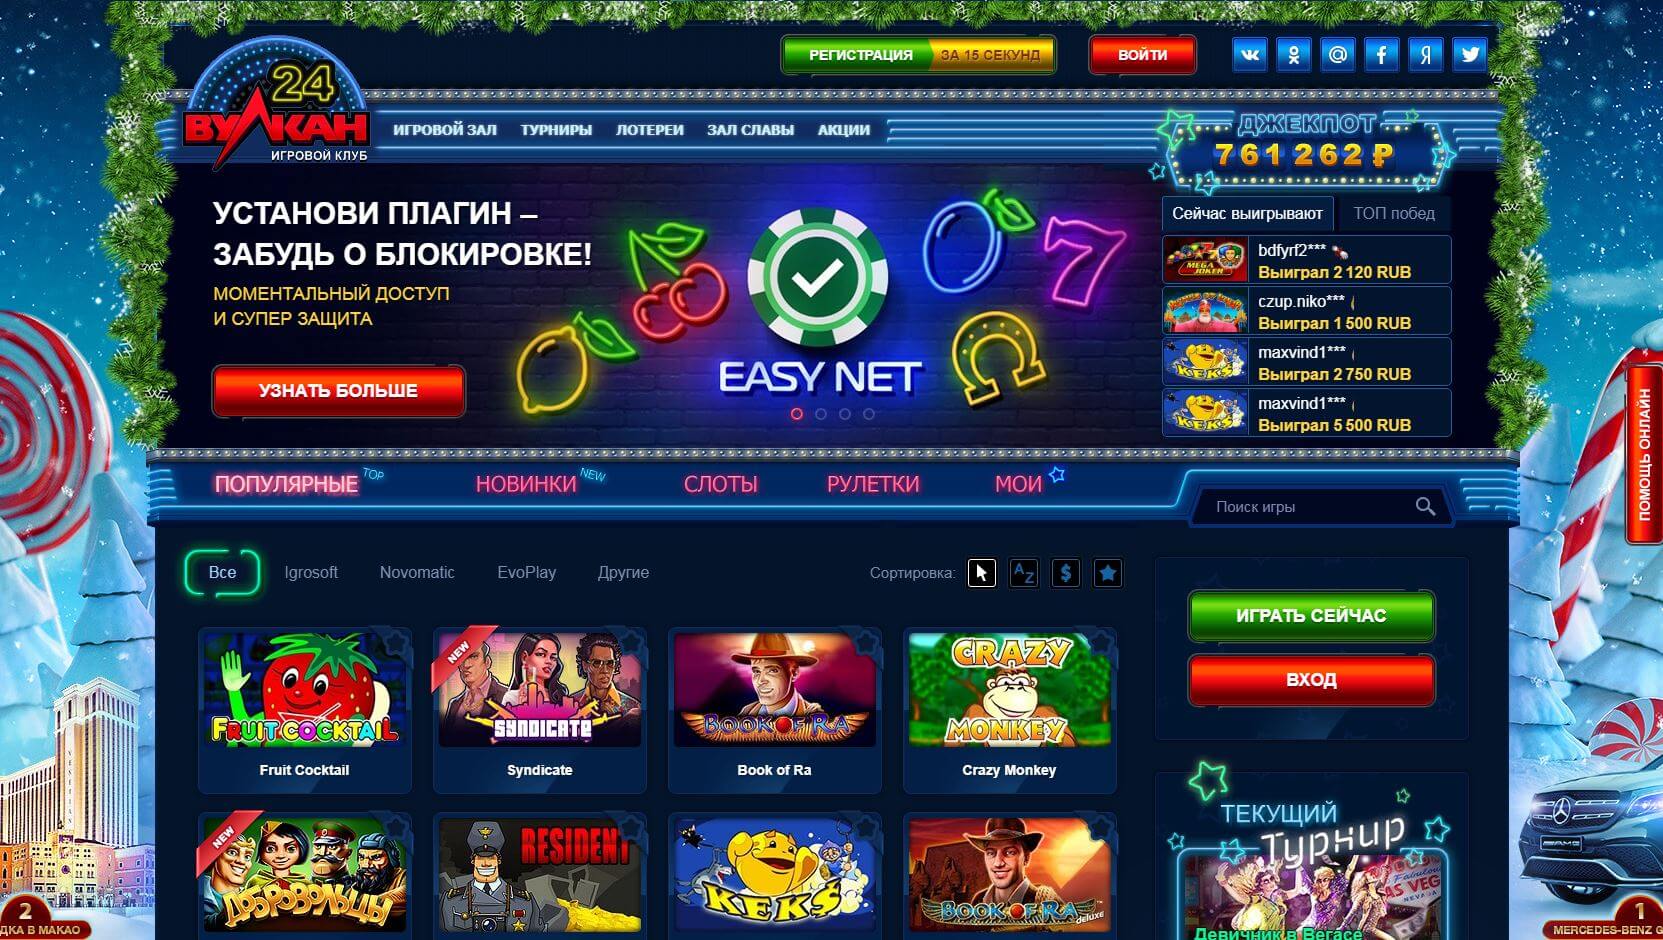 Казино онлайн вулкан новый смотреть бесплатно онлайн джеймс бонд казино рояль